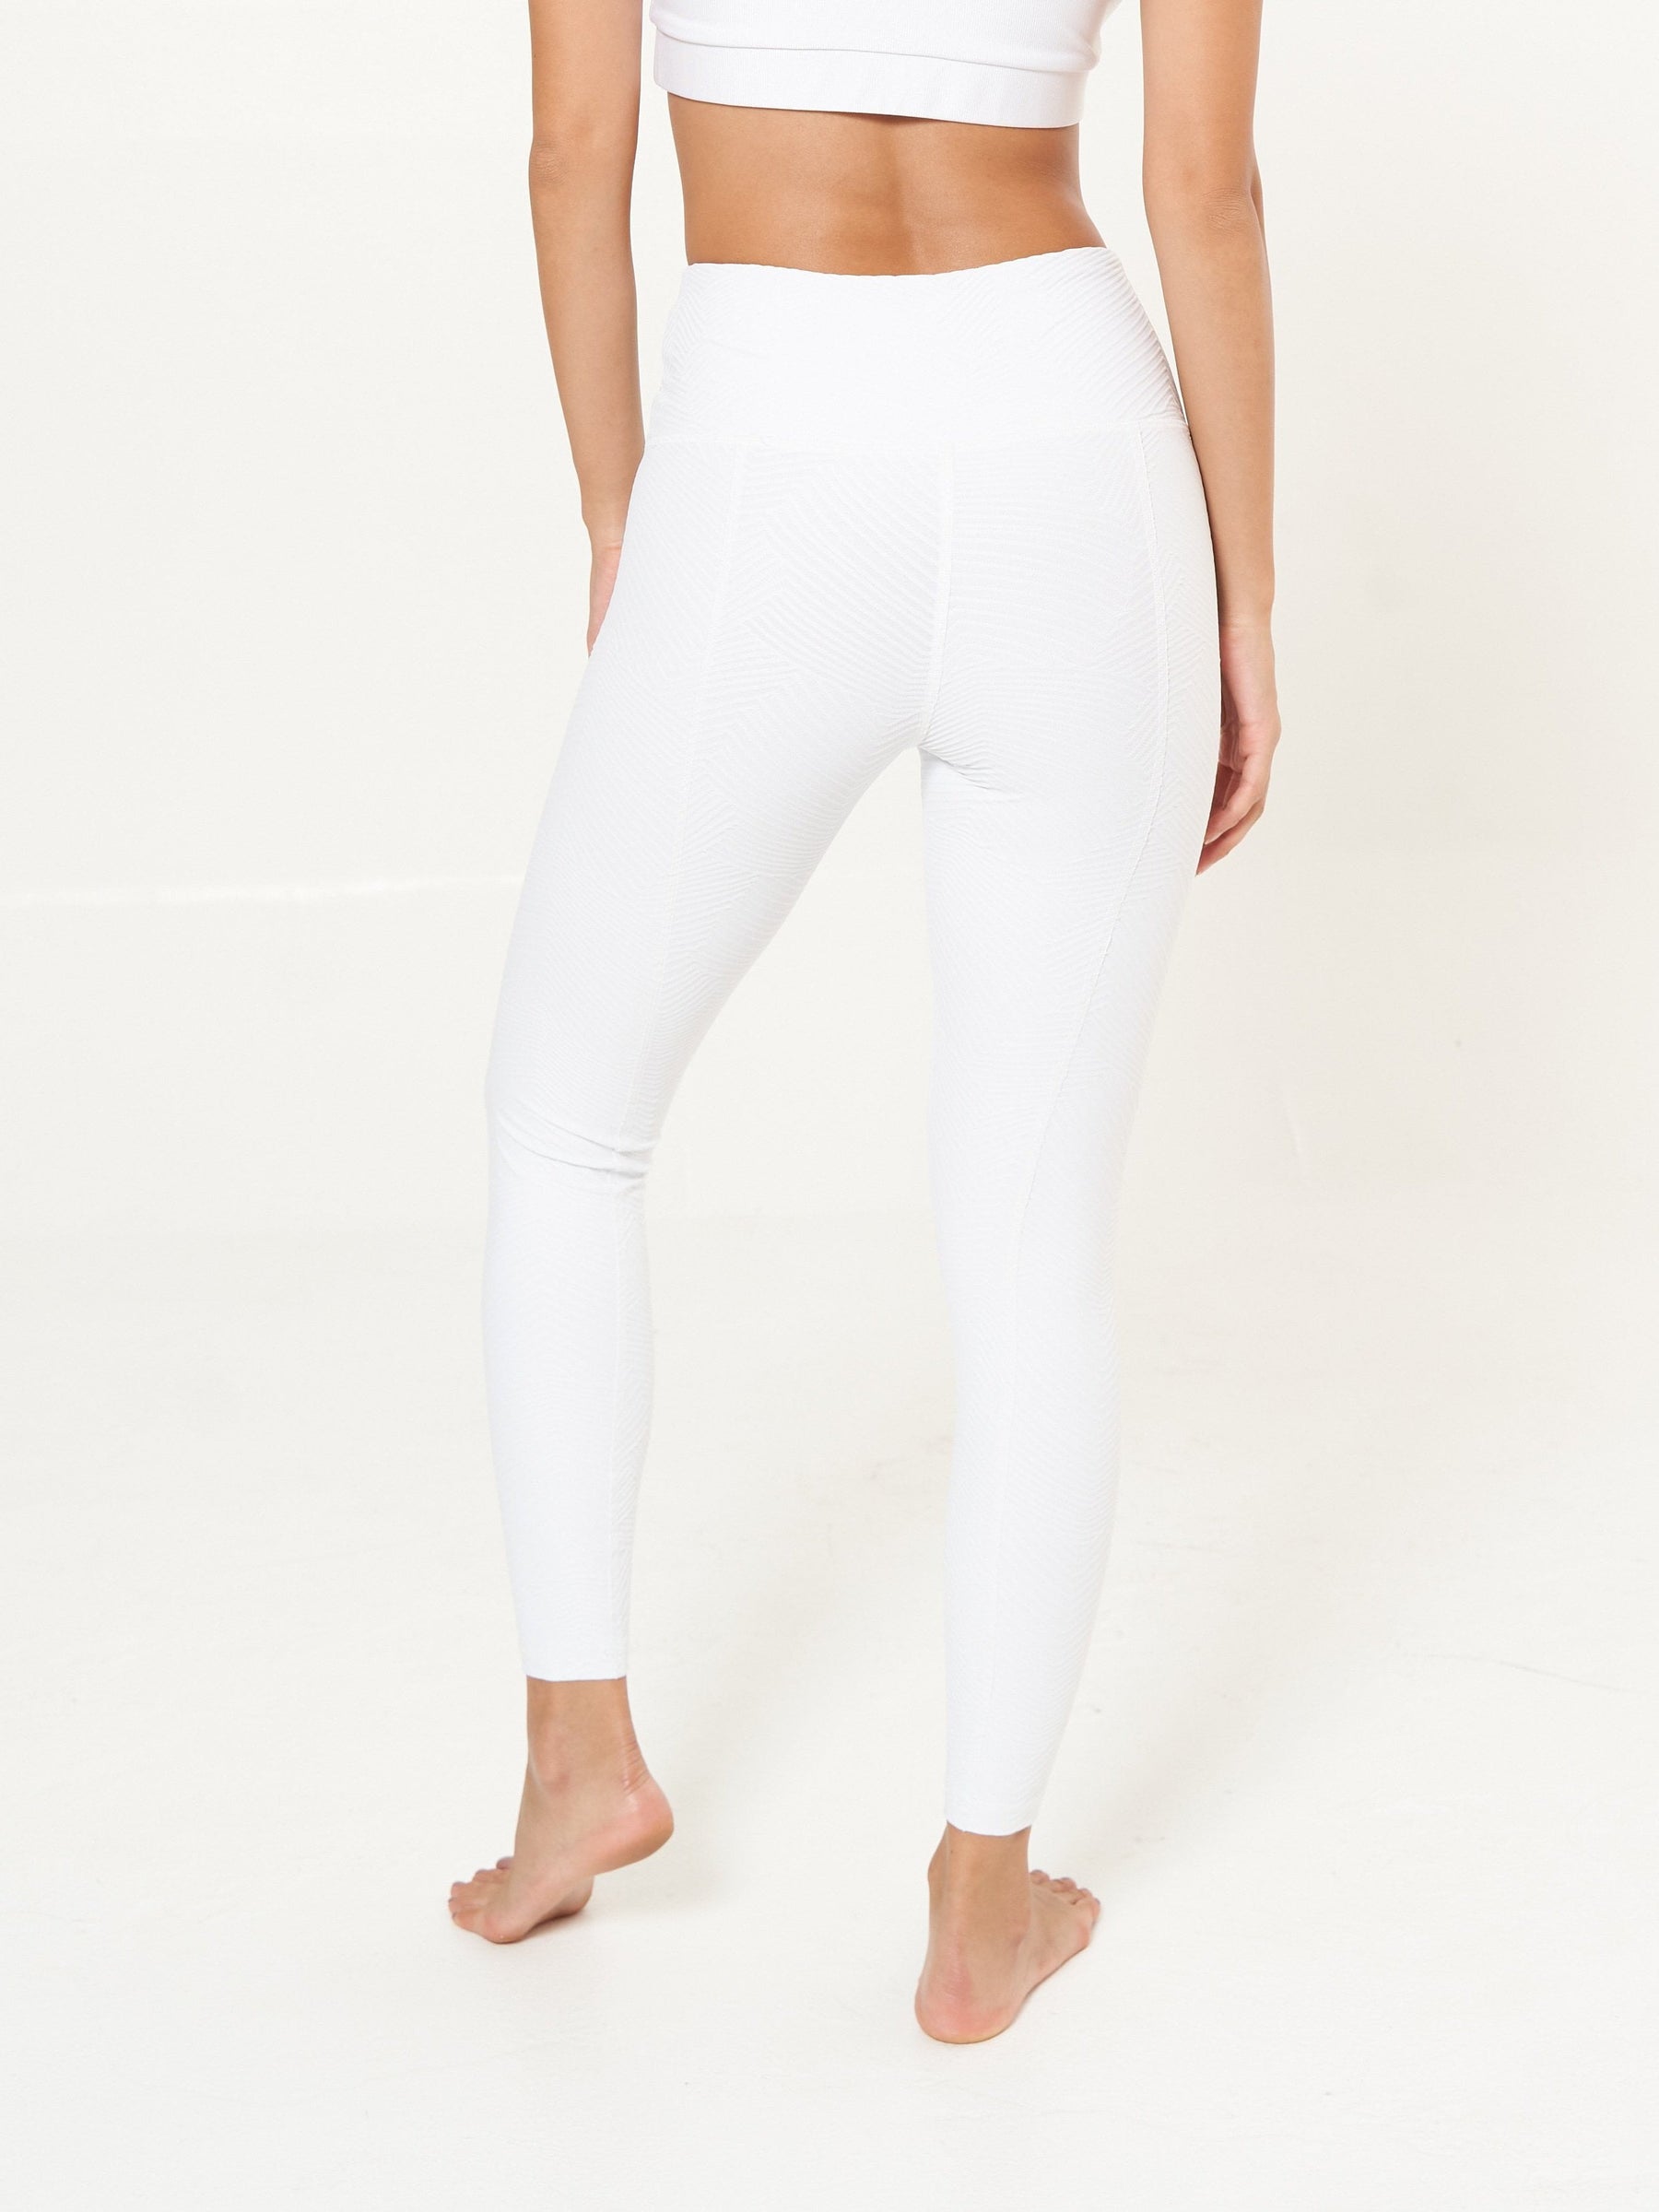 https://www.lolagetts.com/cdn/shop/products/lola-getts-bottoms-hi-rise-leggings-white-ridges-pattern-28387810017395_1800x.jpg?v=1698266151